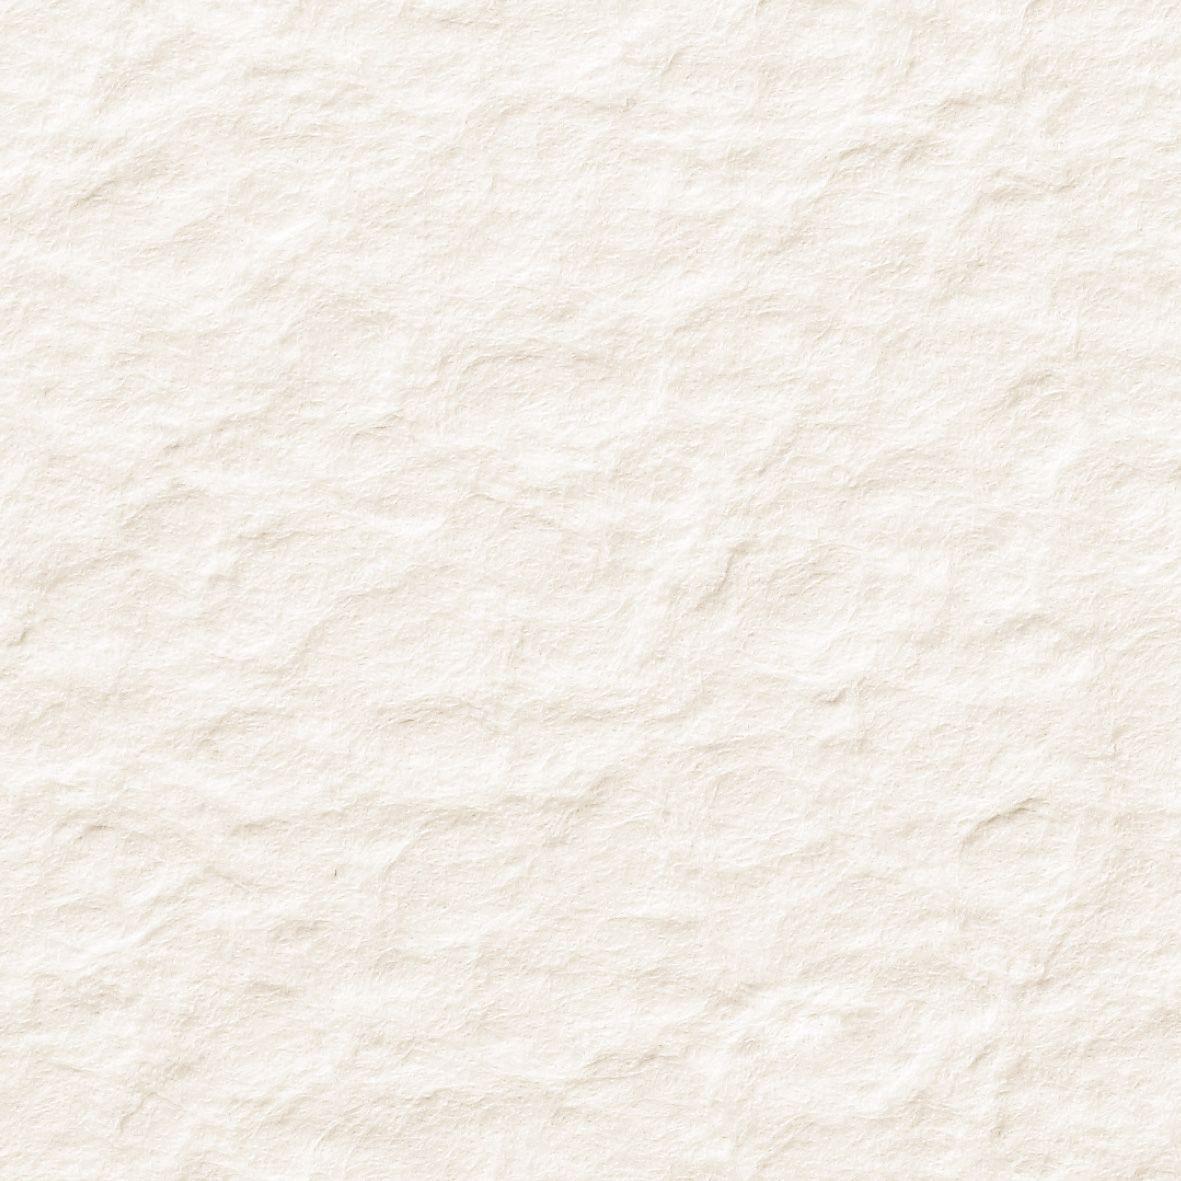 11 x 22 cm SIGEL DU185 Enveloppes motif granit beige format DL 50 pièces 